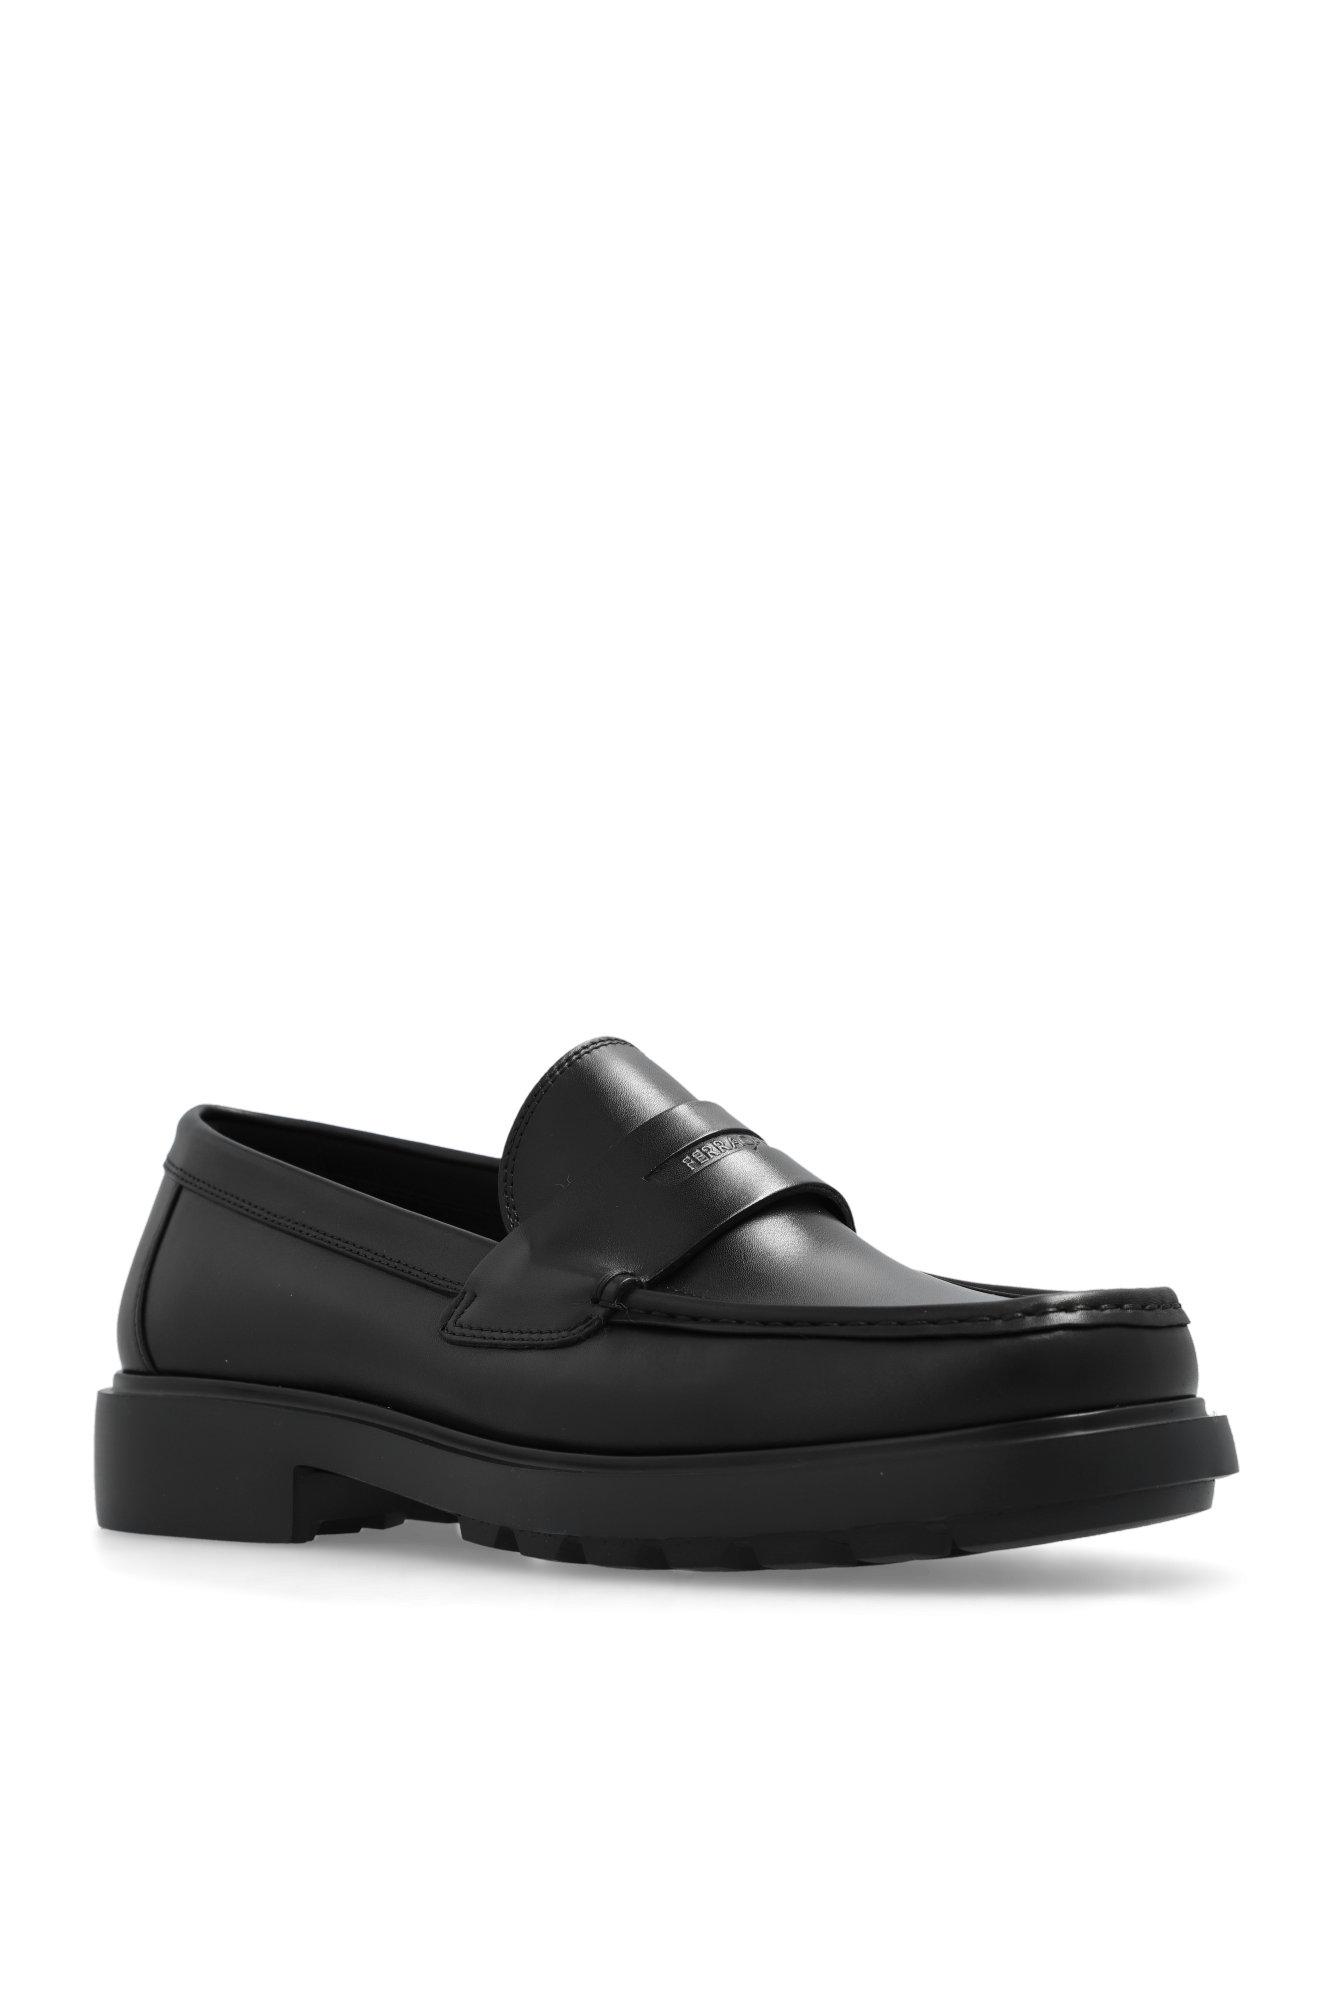 FERRAGAMO ‘Donny’ leather shoes